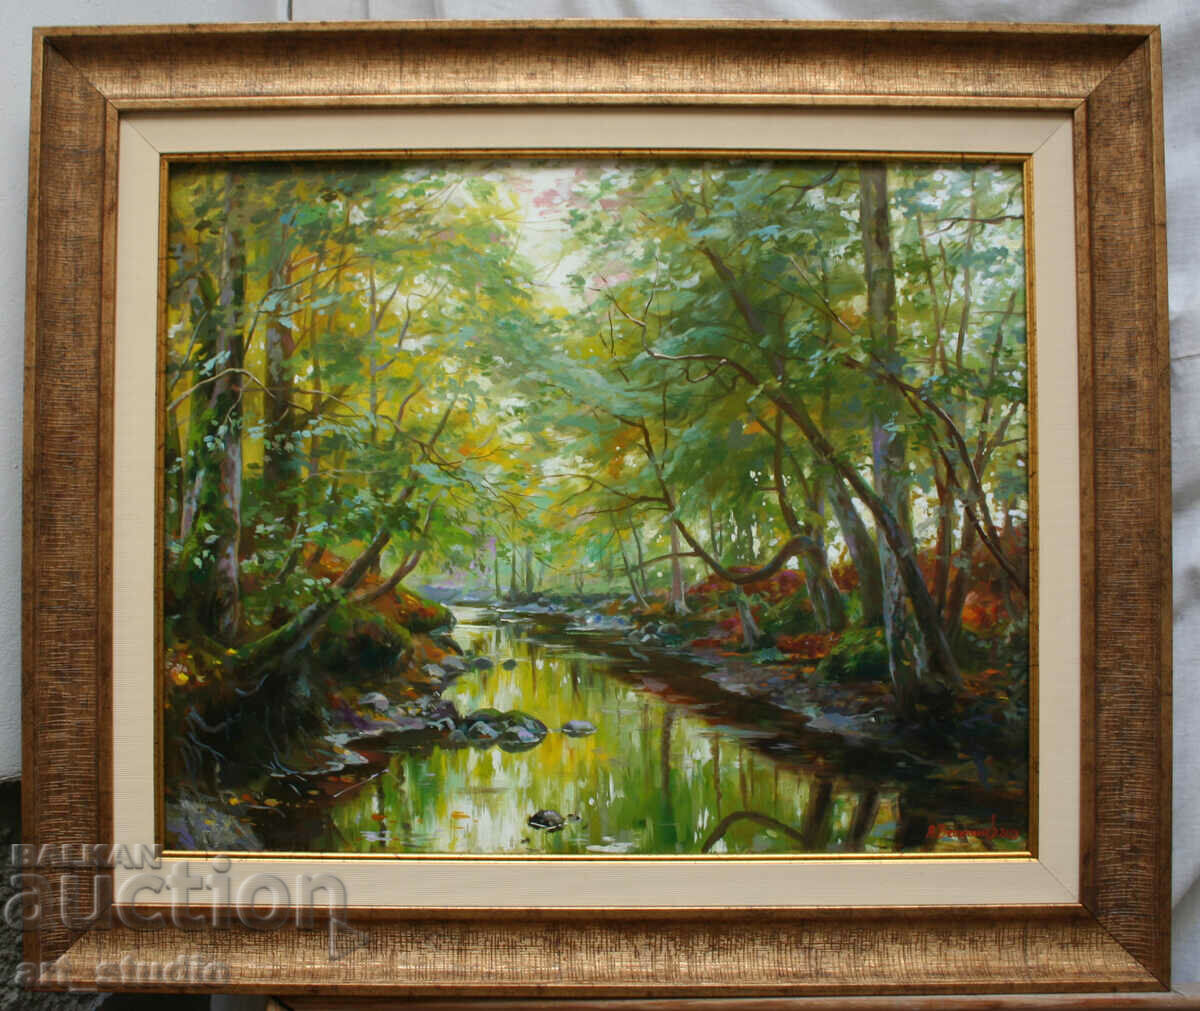 Landscape with river - oil paints